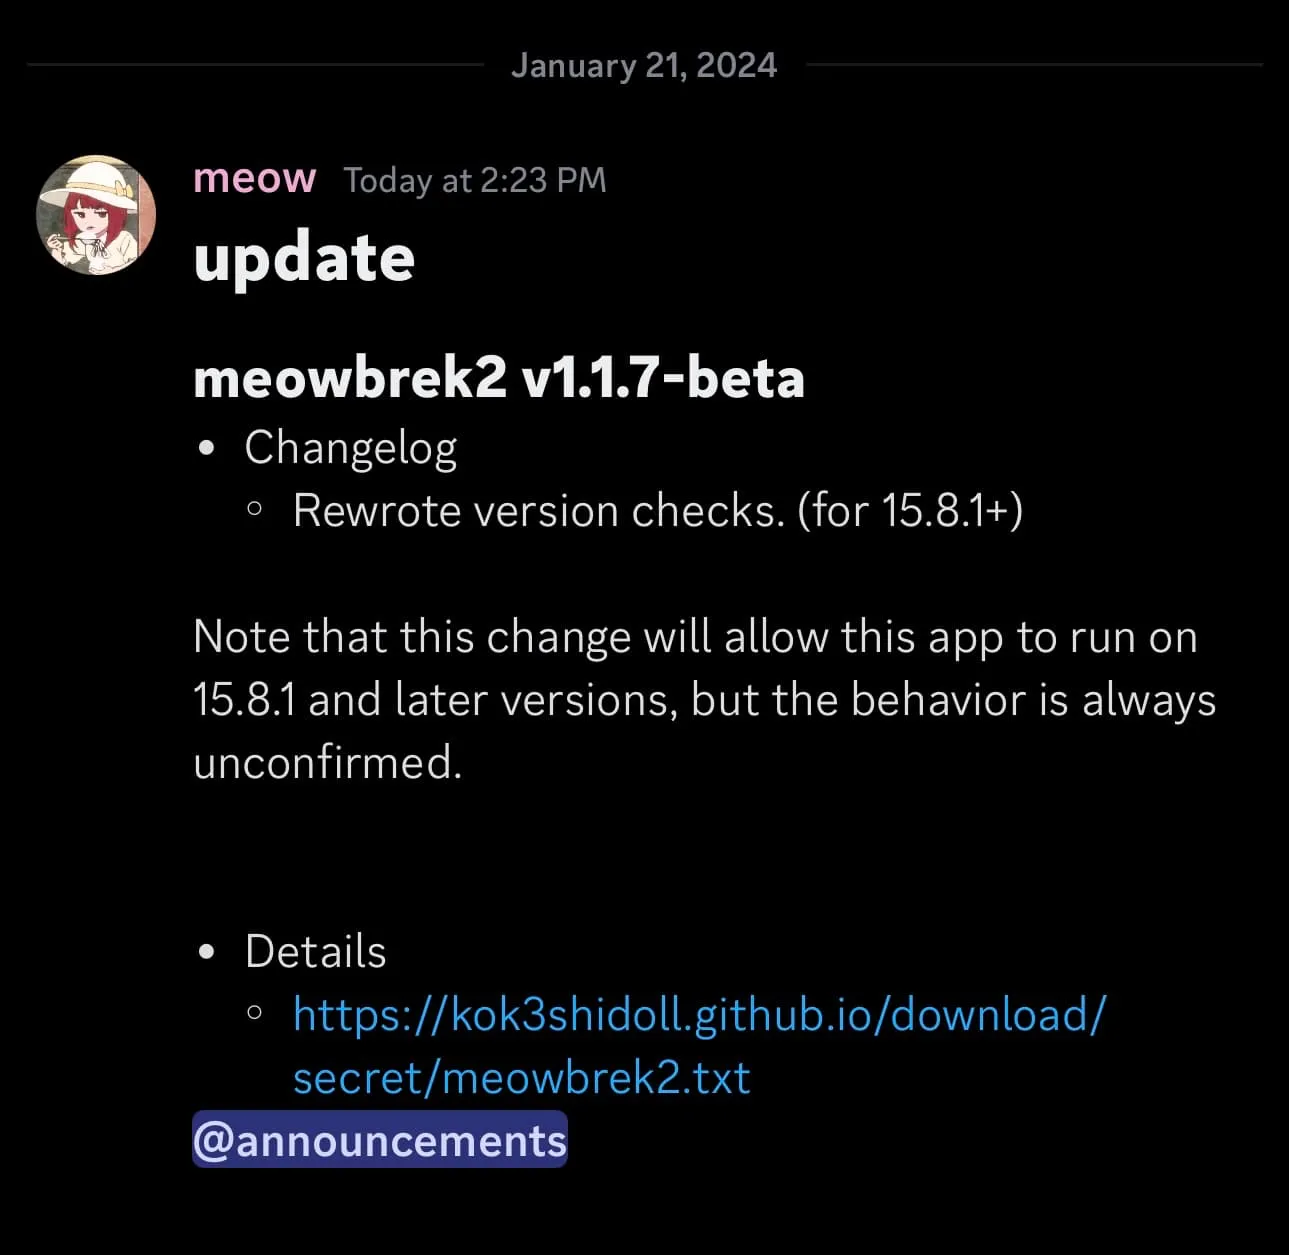 Meowbrek2 v1.1.7-베타가 출시되었습니다.